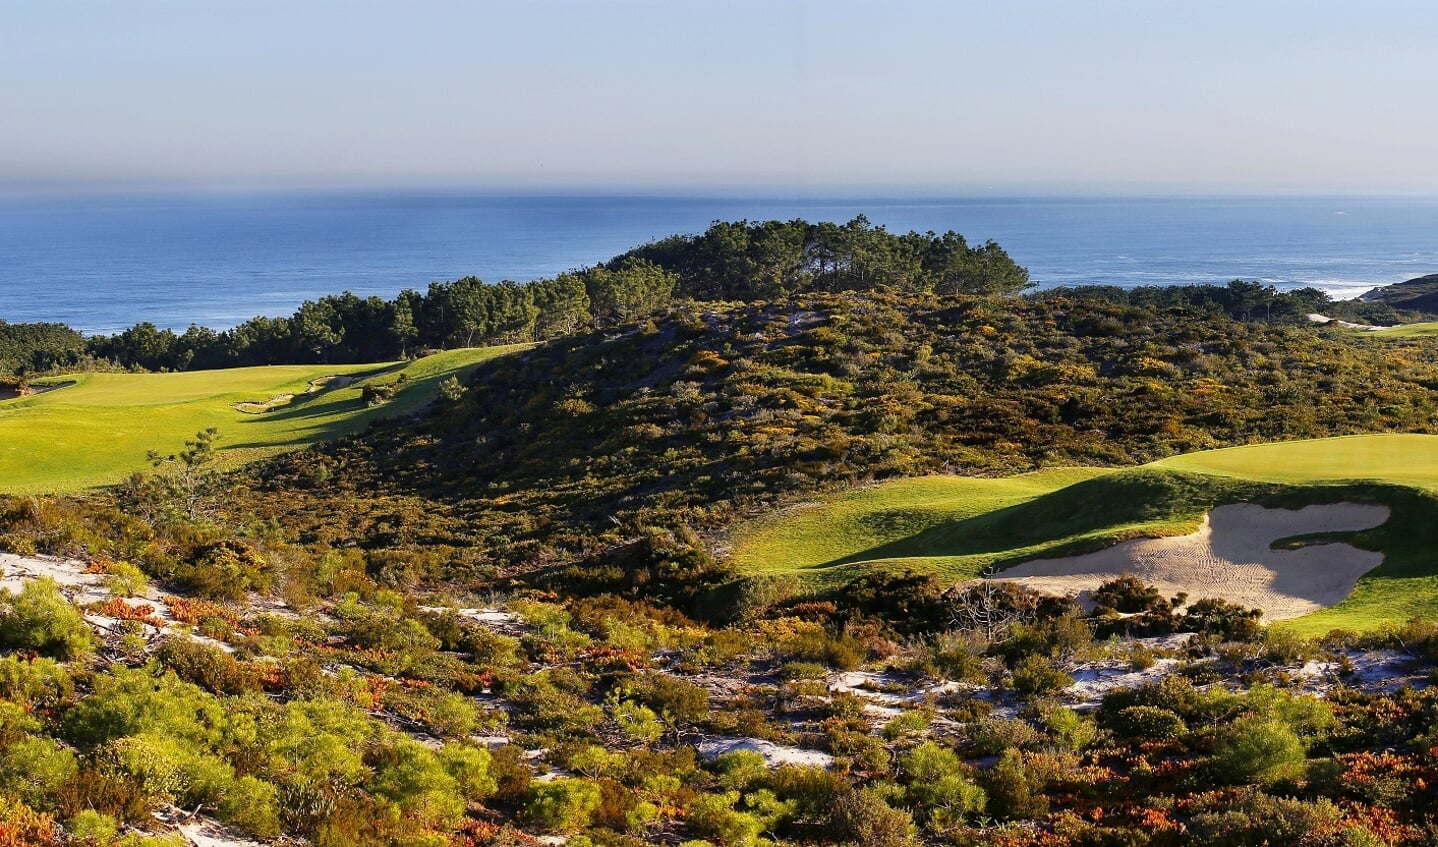 De tiende green van West Cliffs in het haast ongerepte landschap langs de Portugese kust.